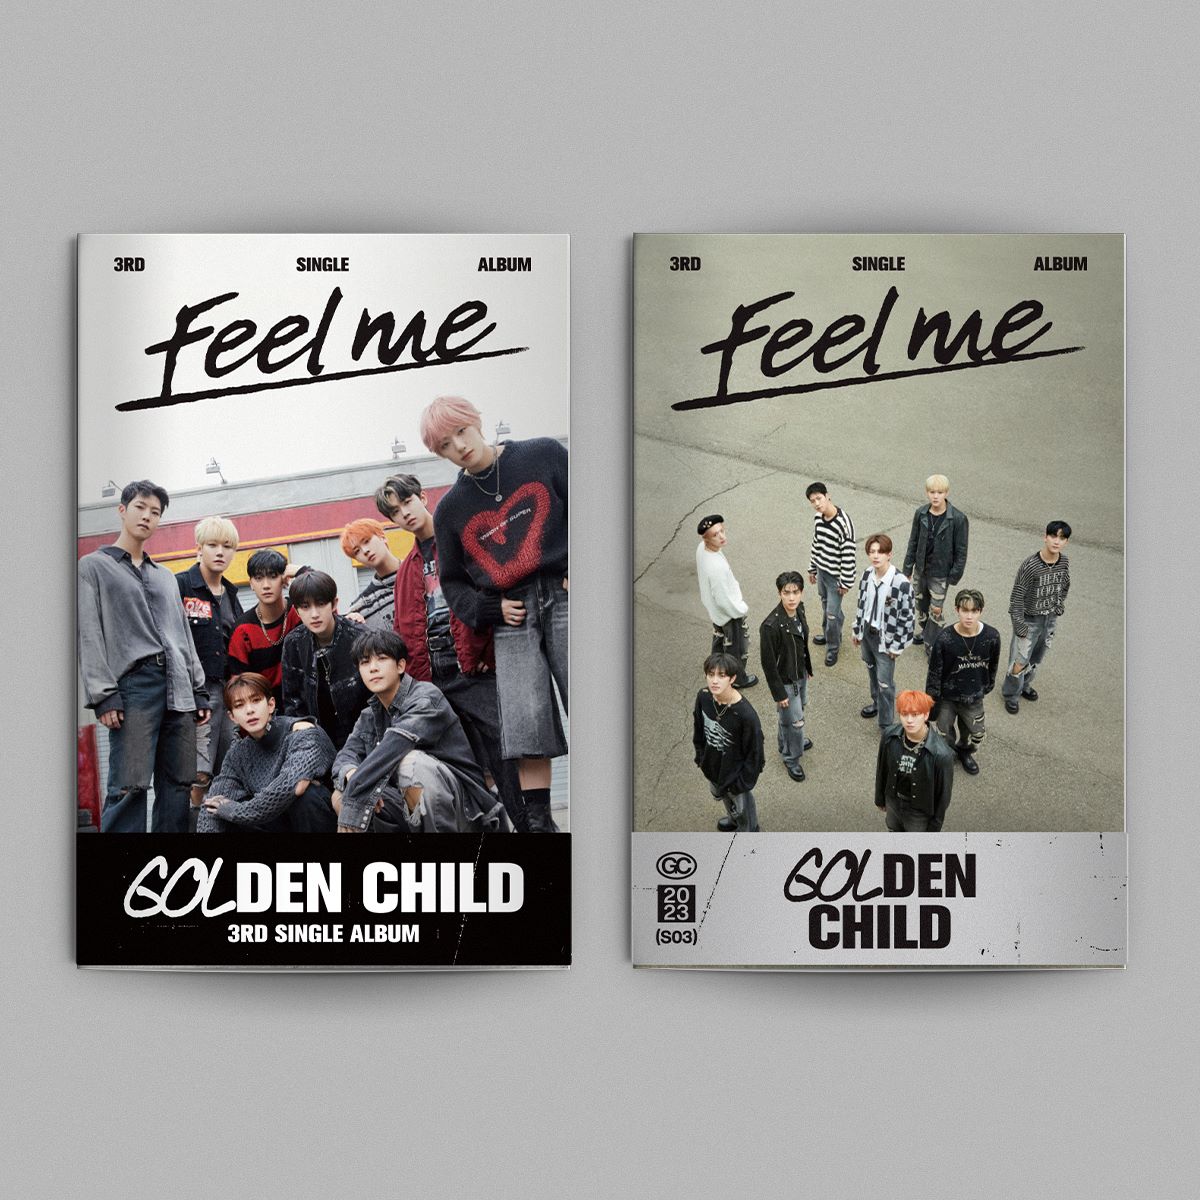 GOLDEN CHILD 3RD SINGLE ALBUM 'FEEL ME' SET COVER